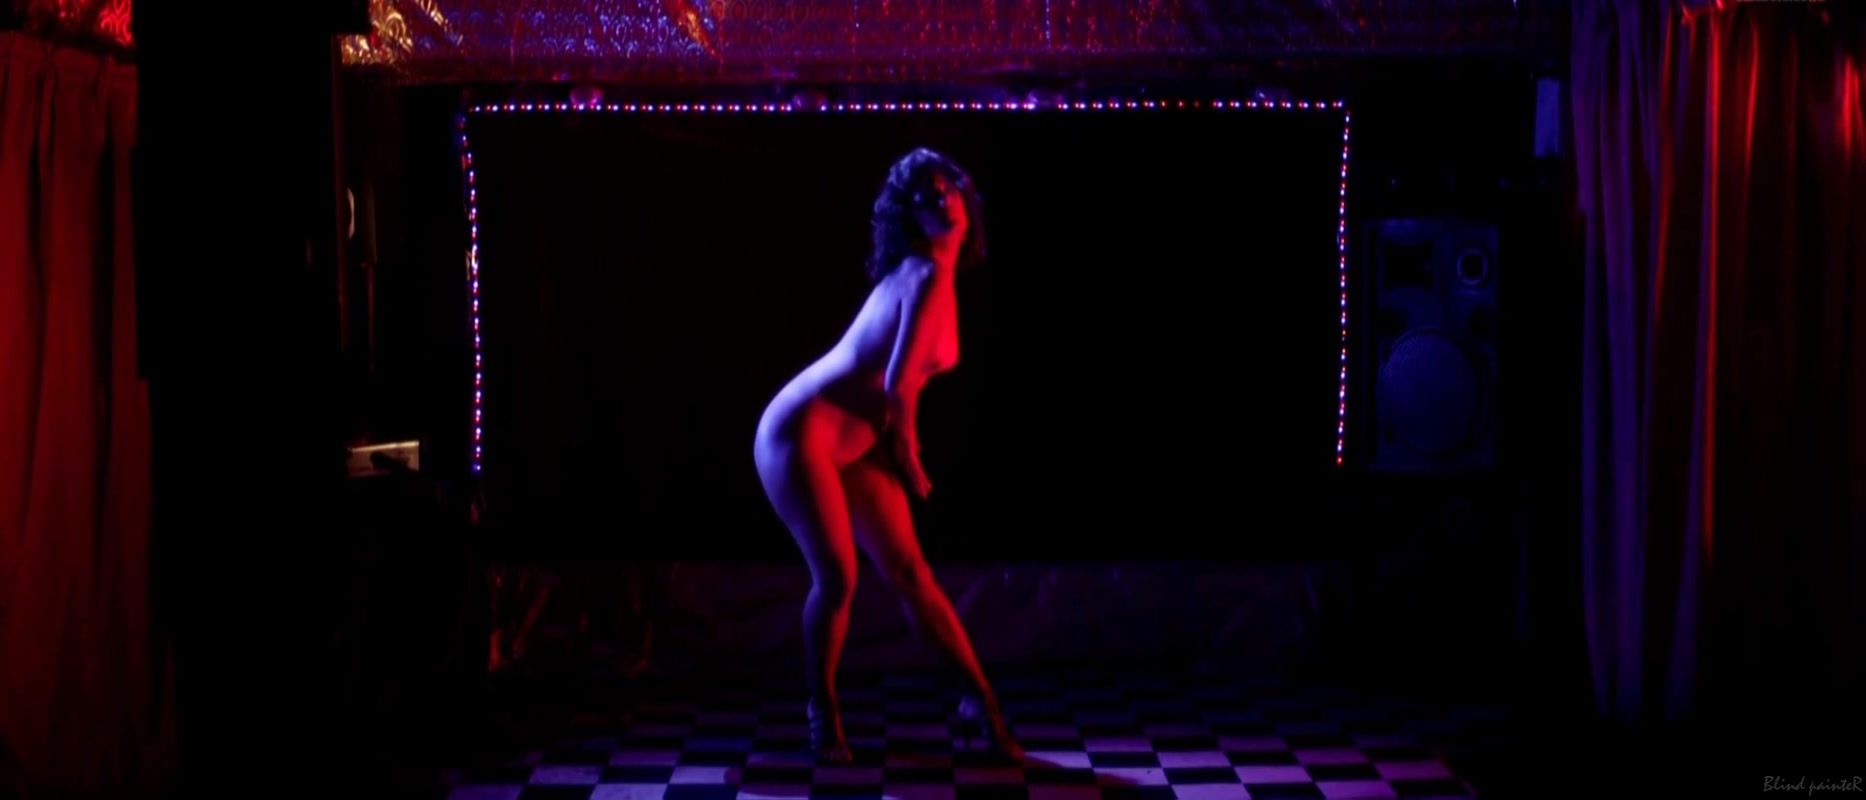 Piss Sex Scene Fabiola's Buzim - Eu Queria Ser Arrebatada, Amordacada e, nas minhas costas, Tatuada (2015) Small Tits Porn